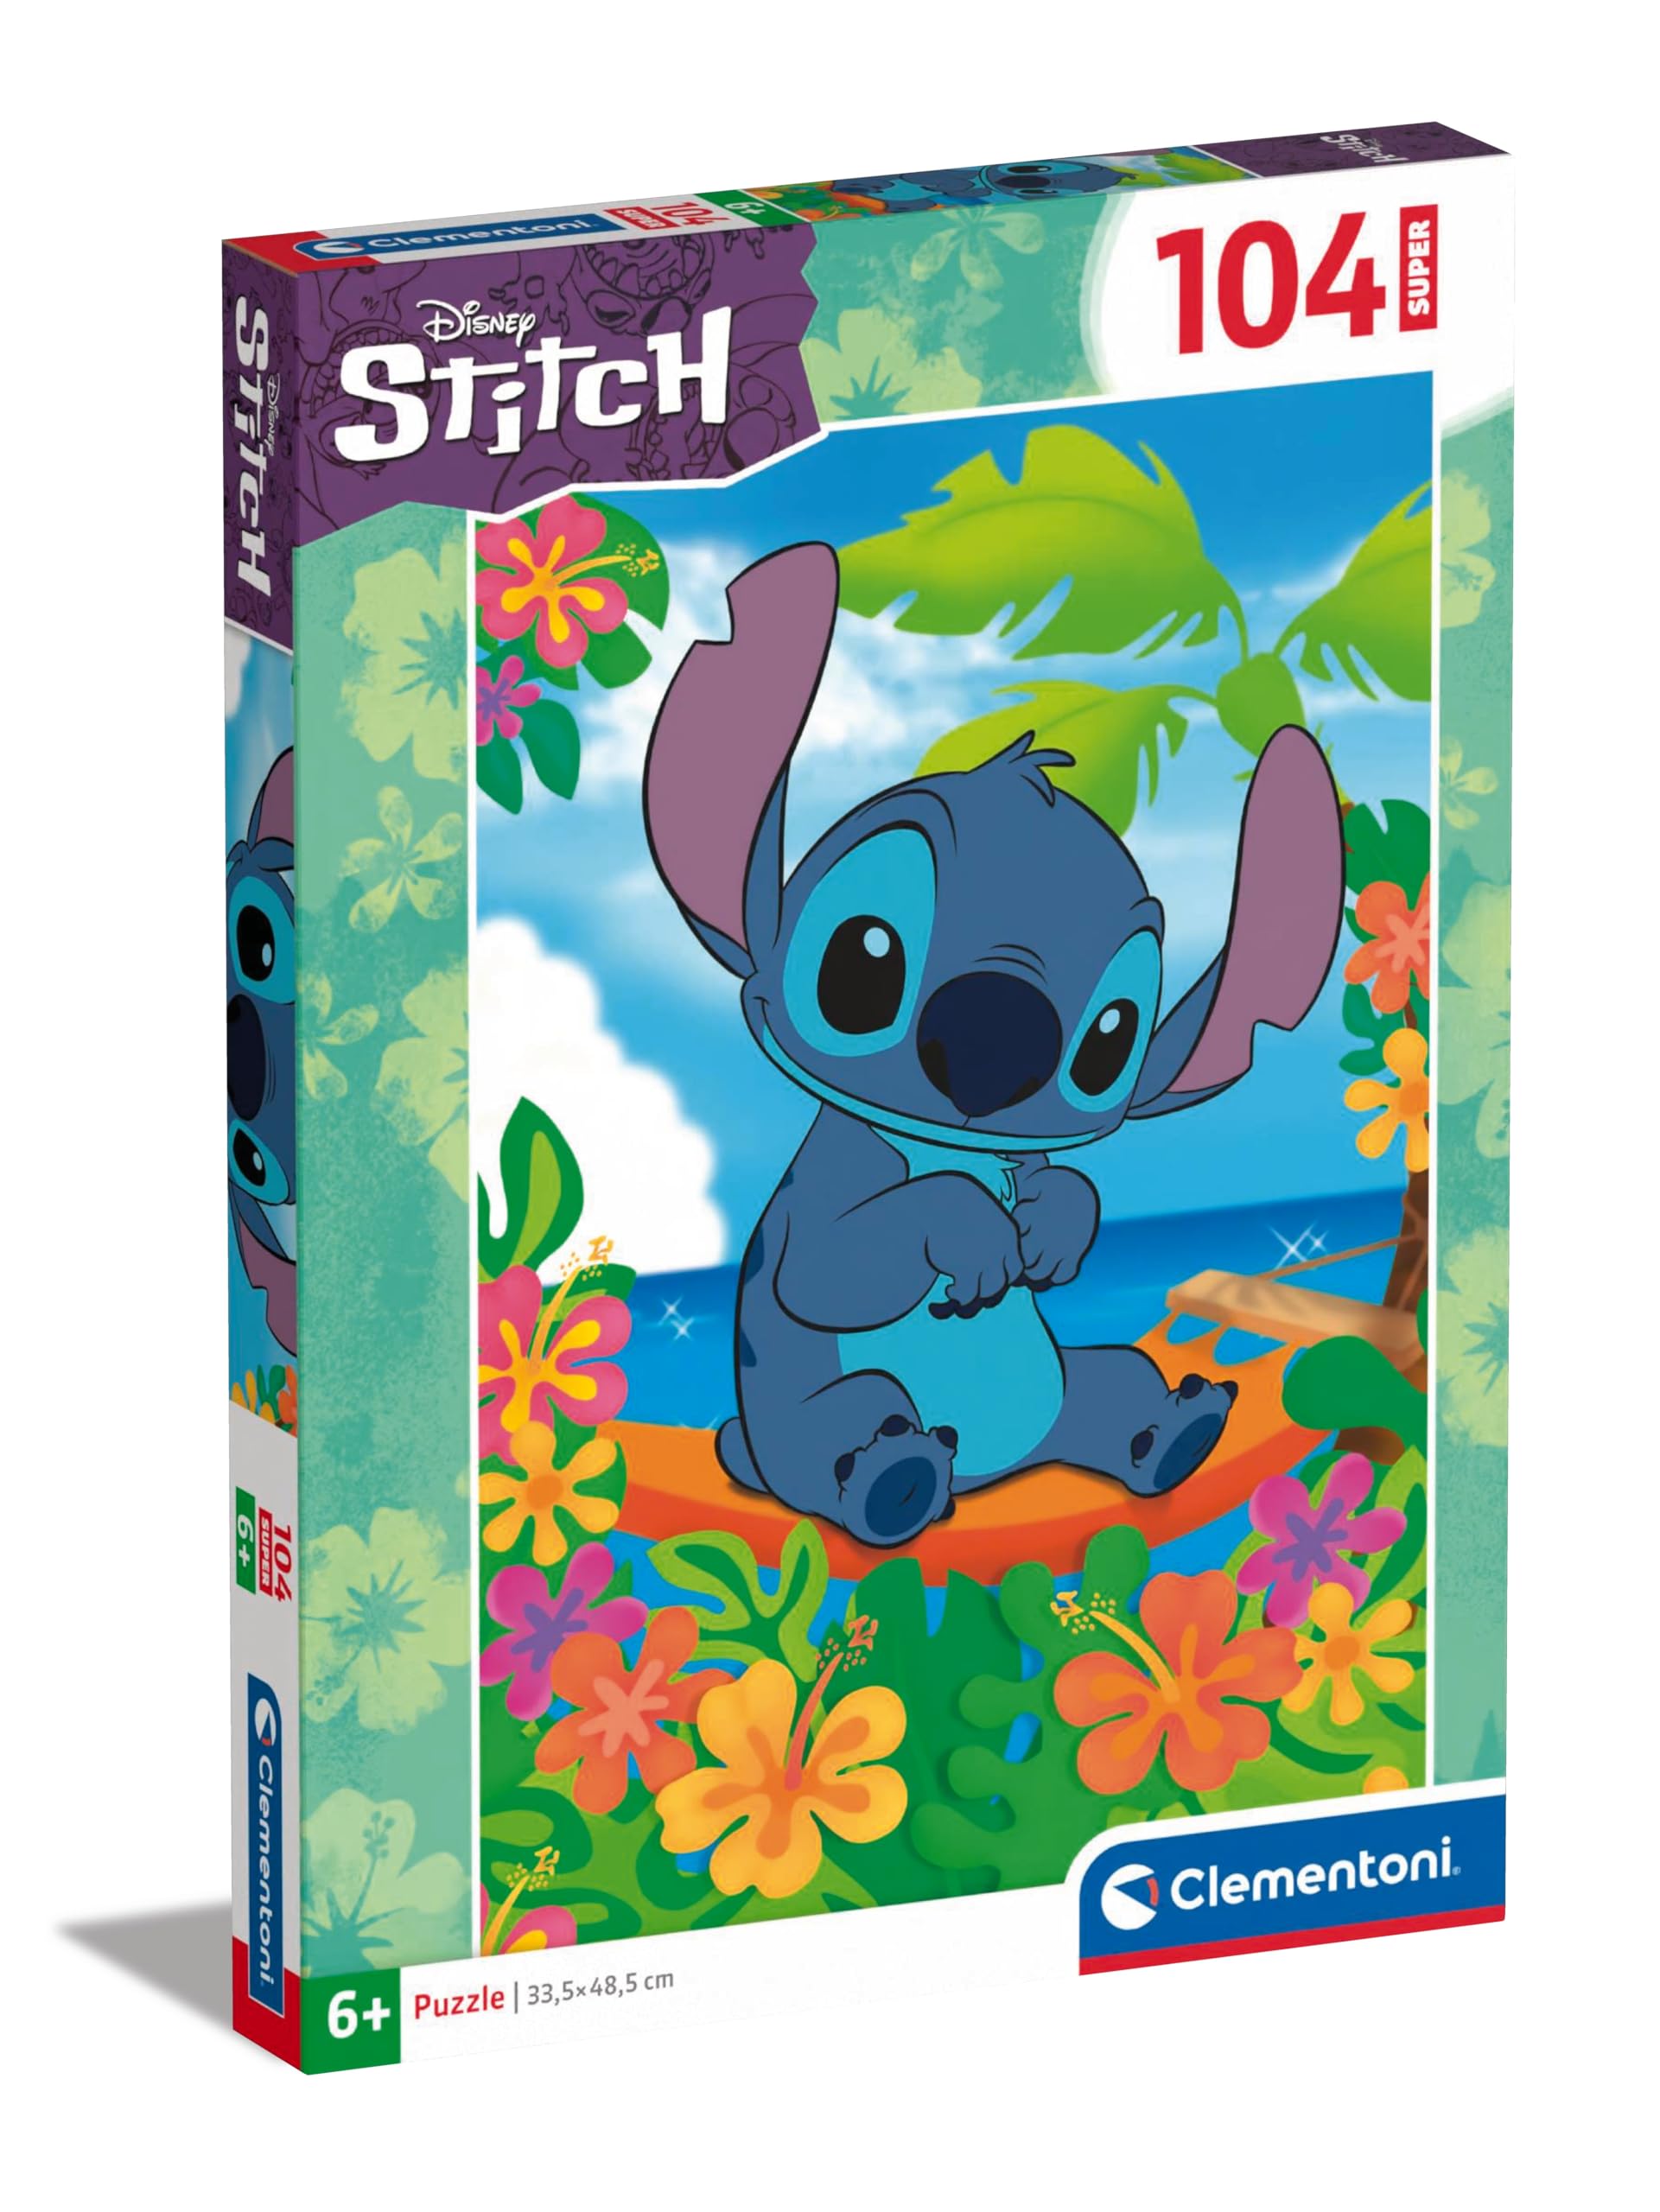 Promo Clementoni- Stitch Puzzle, 27572, Multilingue tIokSR8rr pas cher